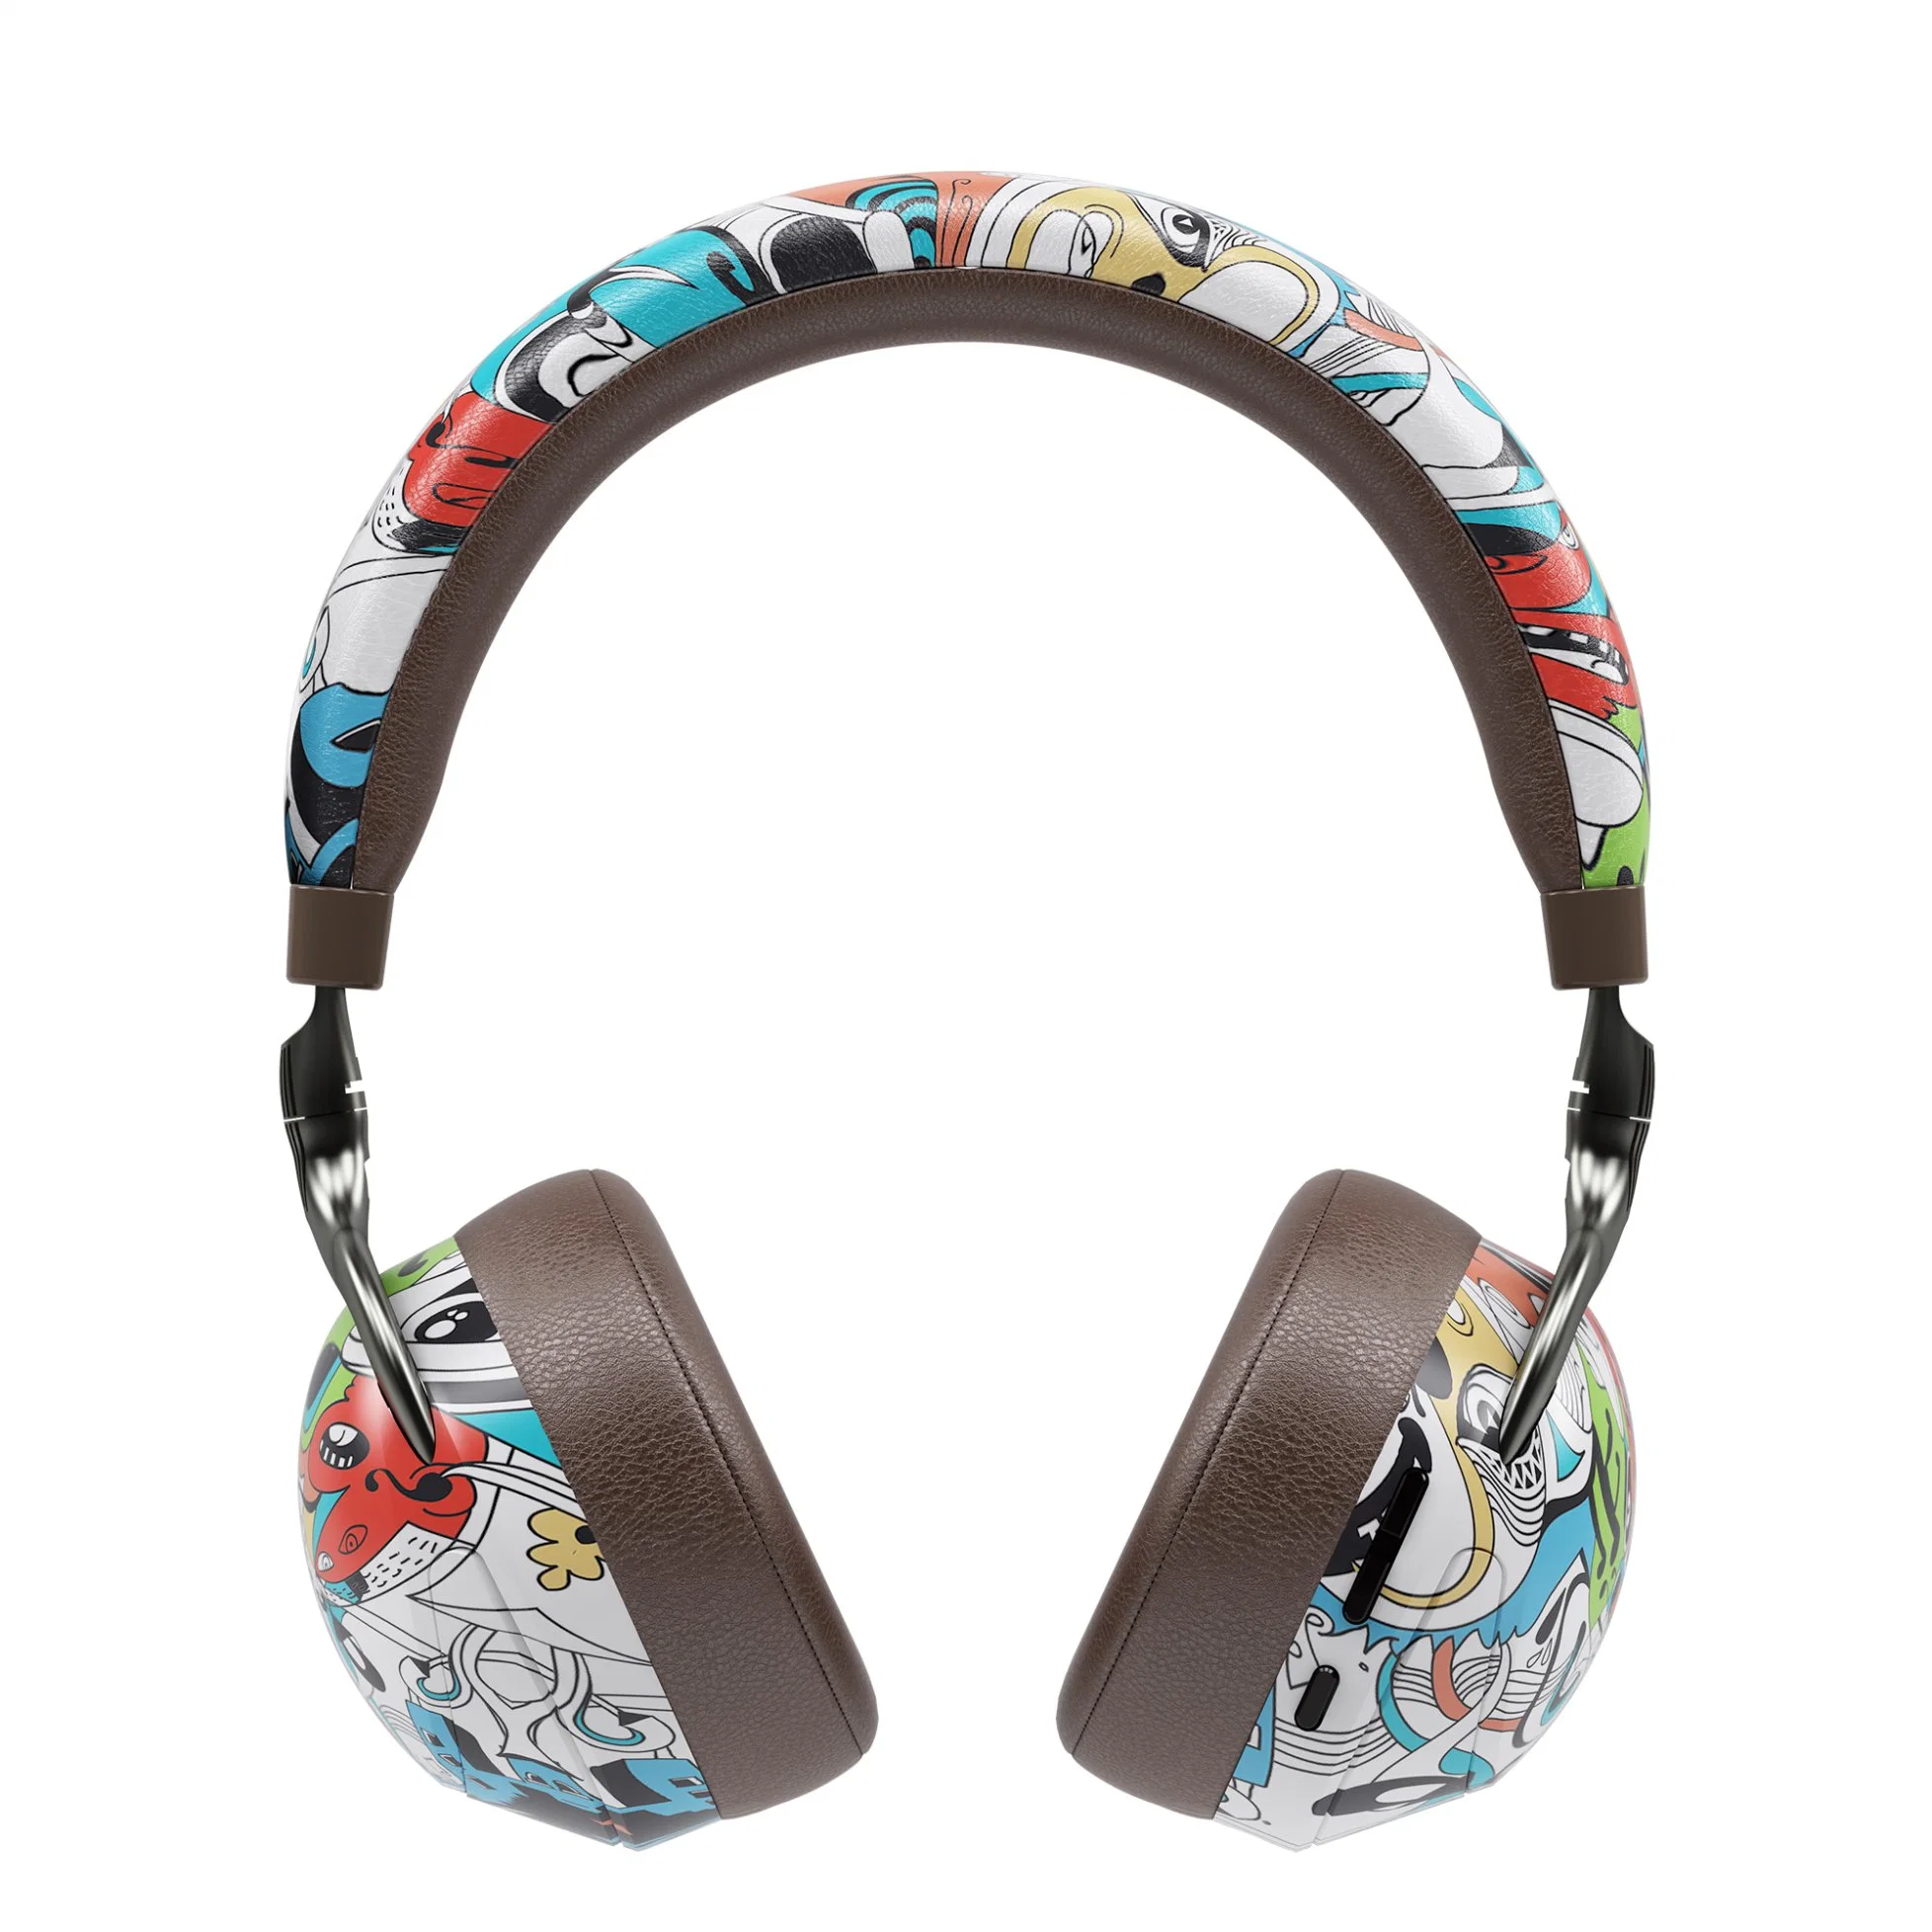 الموضة سماعات رأس بلوتوث اللاسلكية رسم جرافيتي طباعة الكمبيوتر لعبة المحمول سماعة الرأس